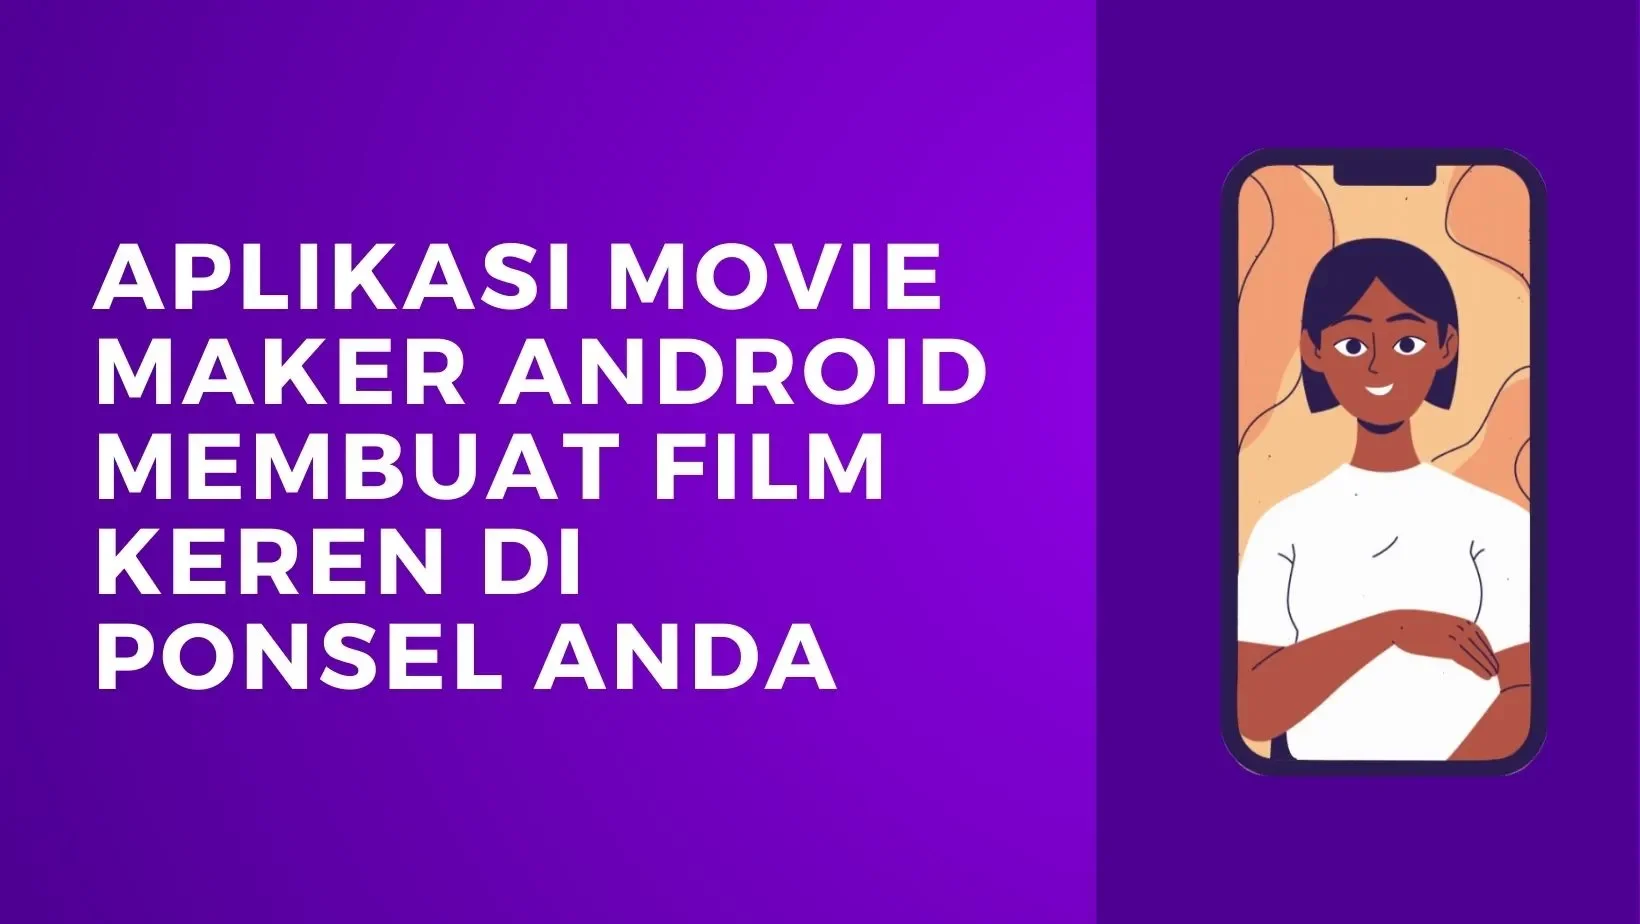 Aplikasi Movie Maker Android Membuat Film Keren di Ponsel Anda